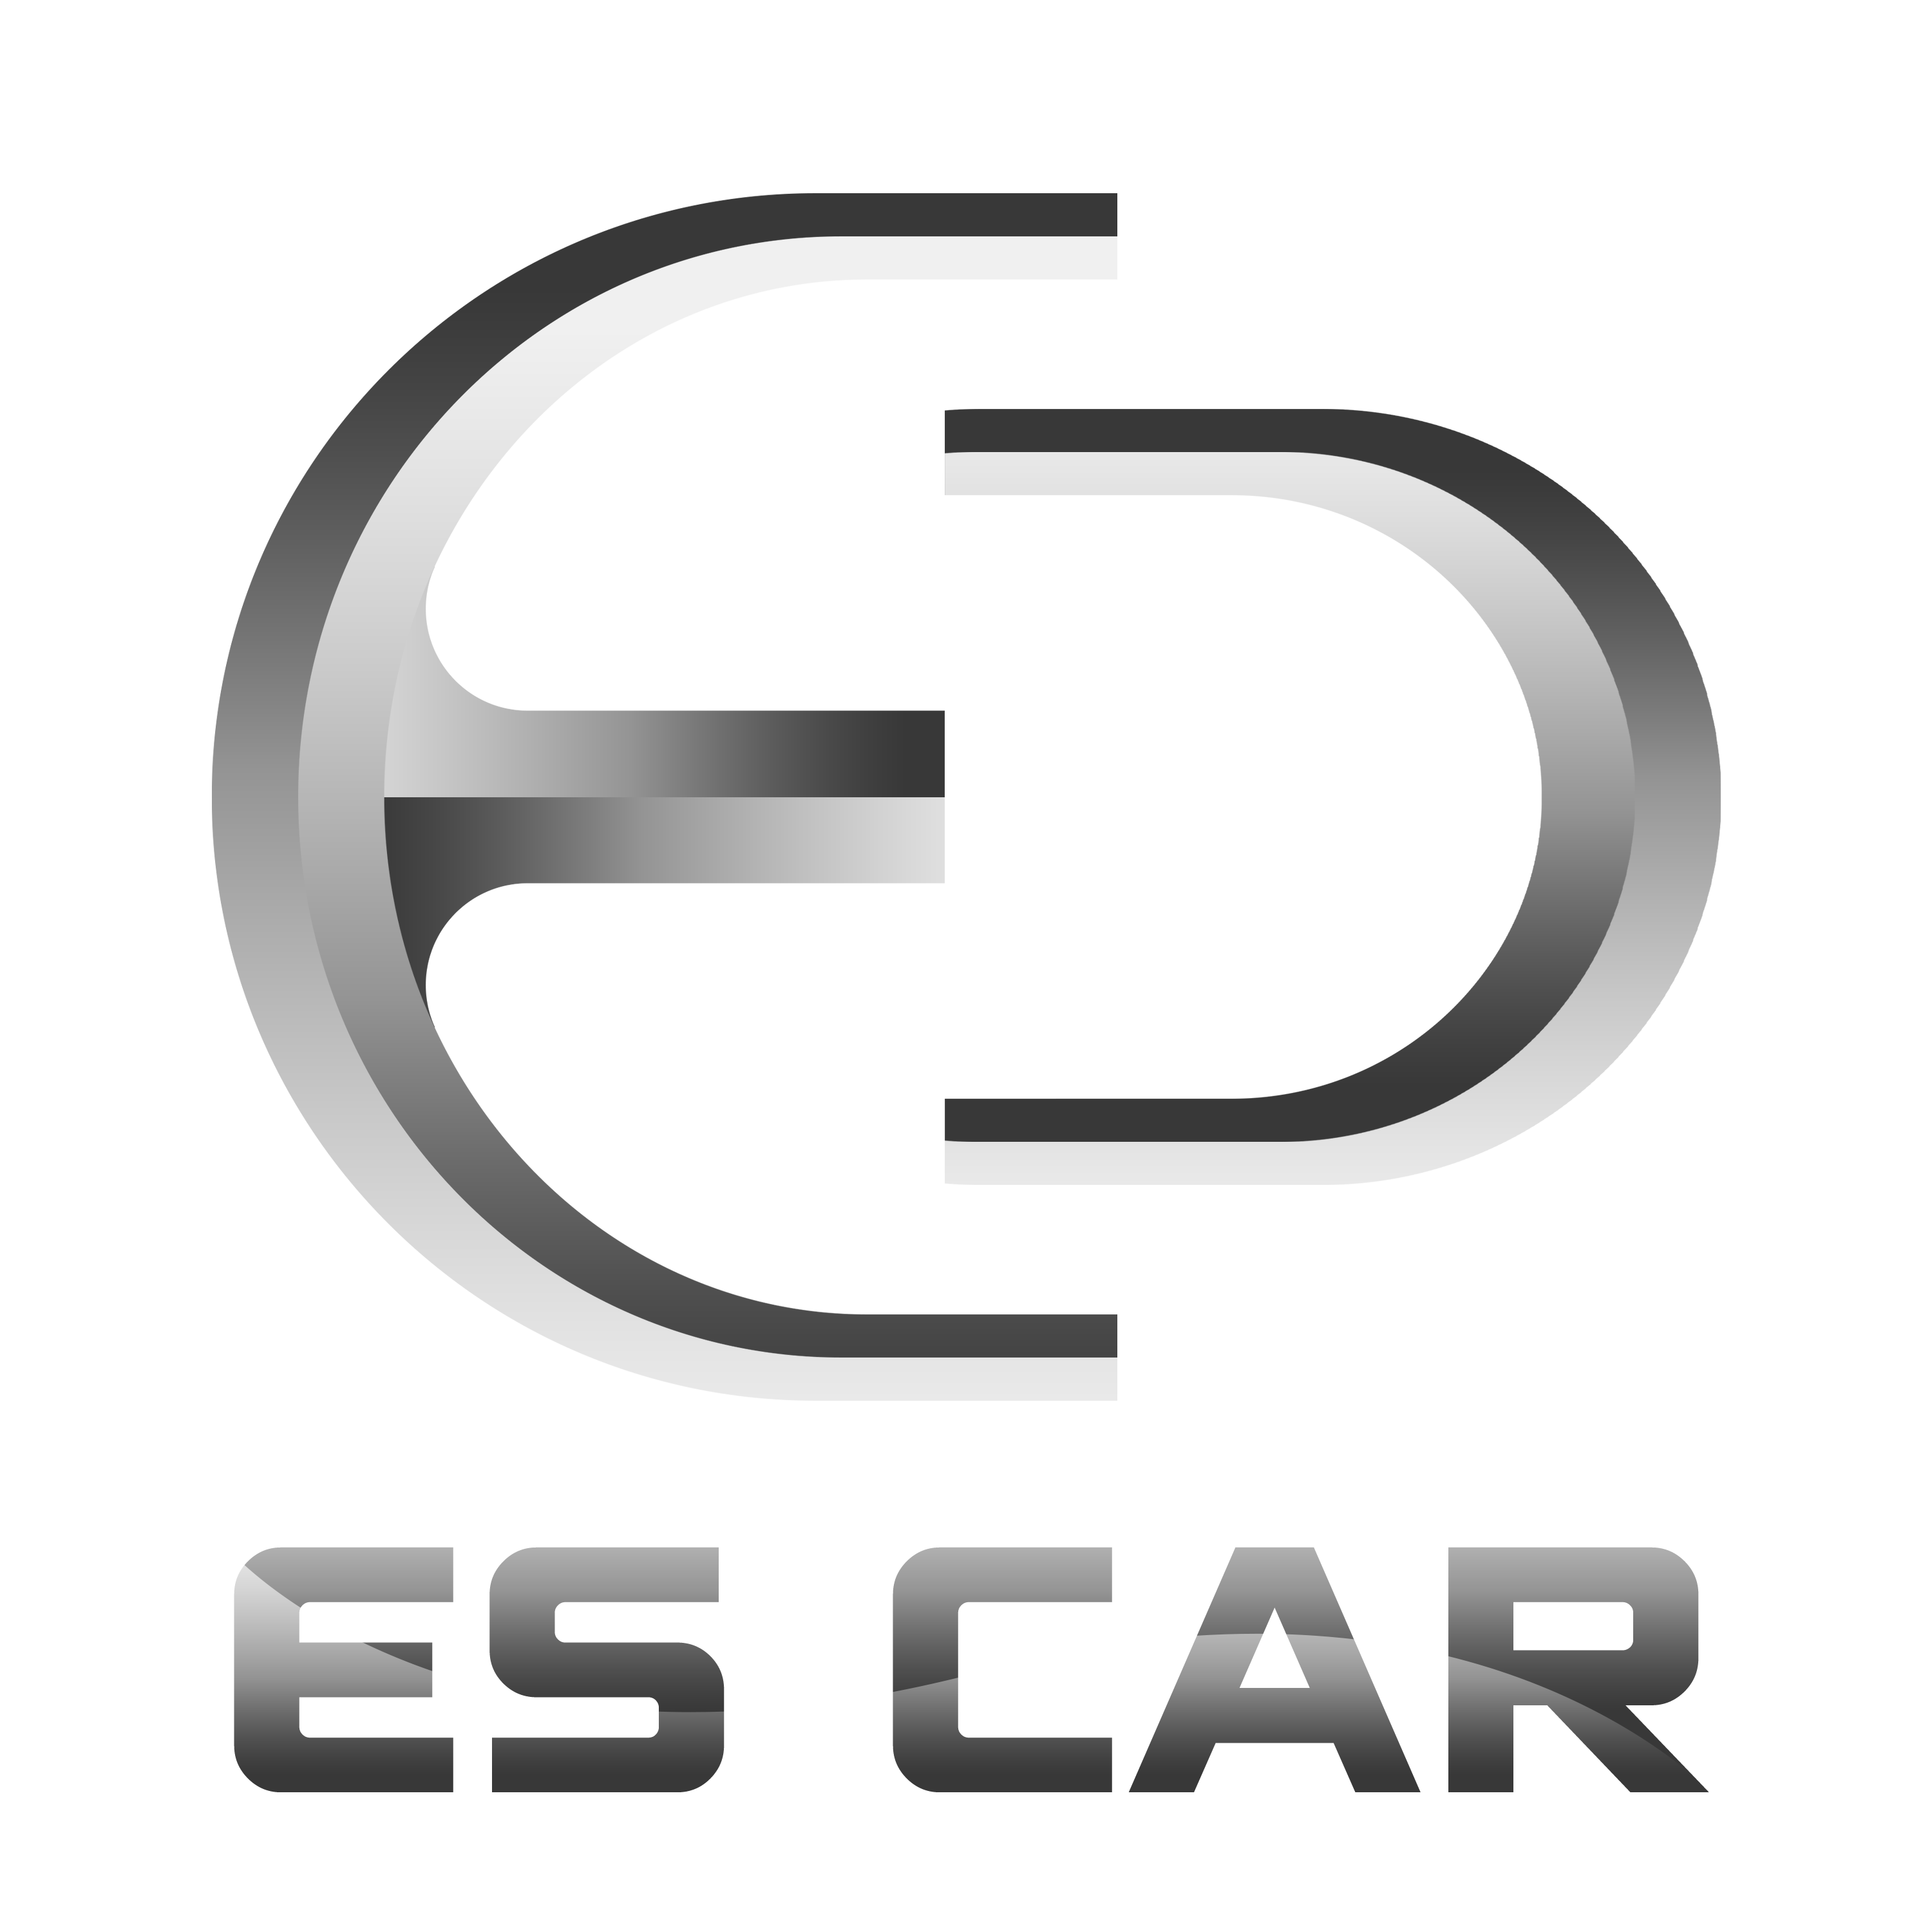 Car Company Logo Design